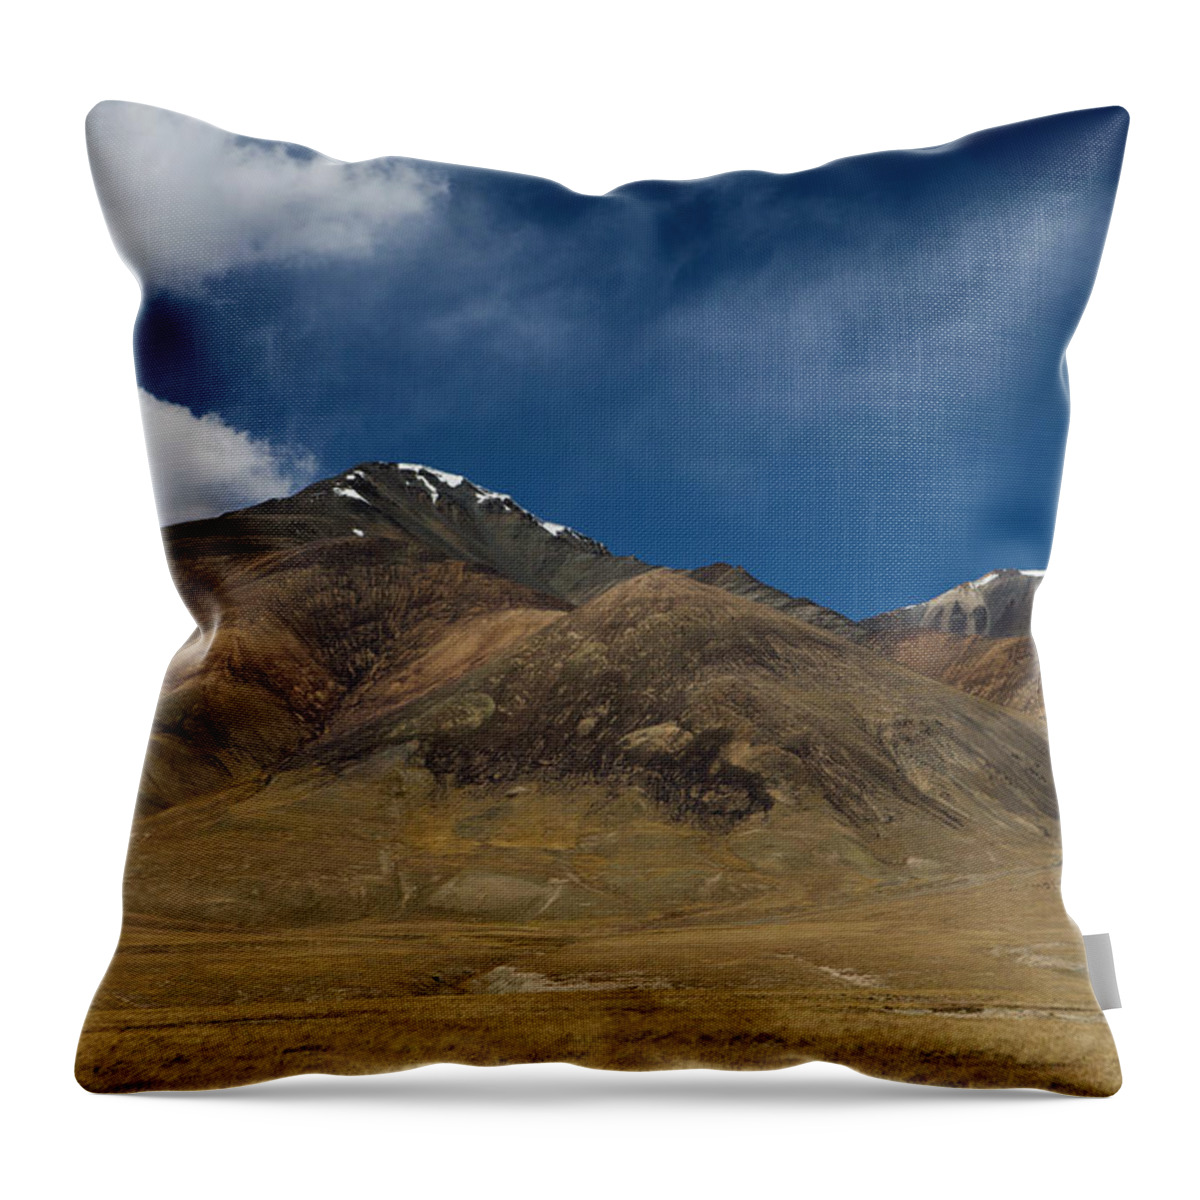 Sebastian Kennerknecht Throw Pillow featuring the photograph Tien Shan Mountains, Kyrgyzstan by Sebastian Kennerknecht